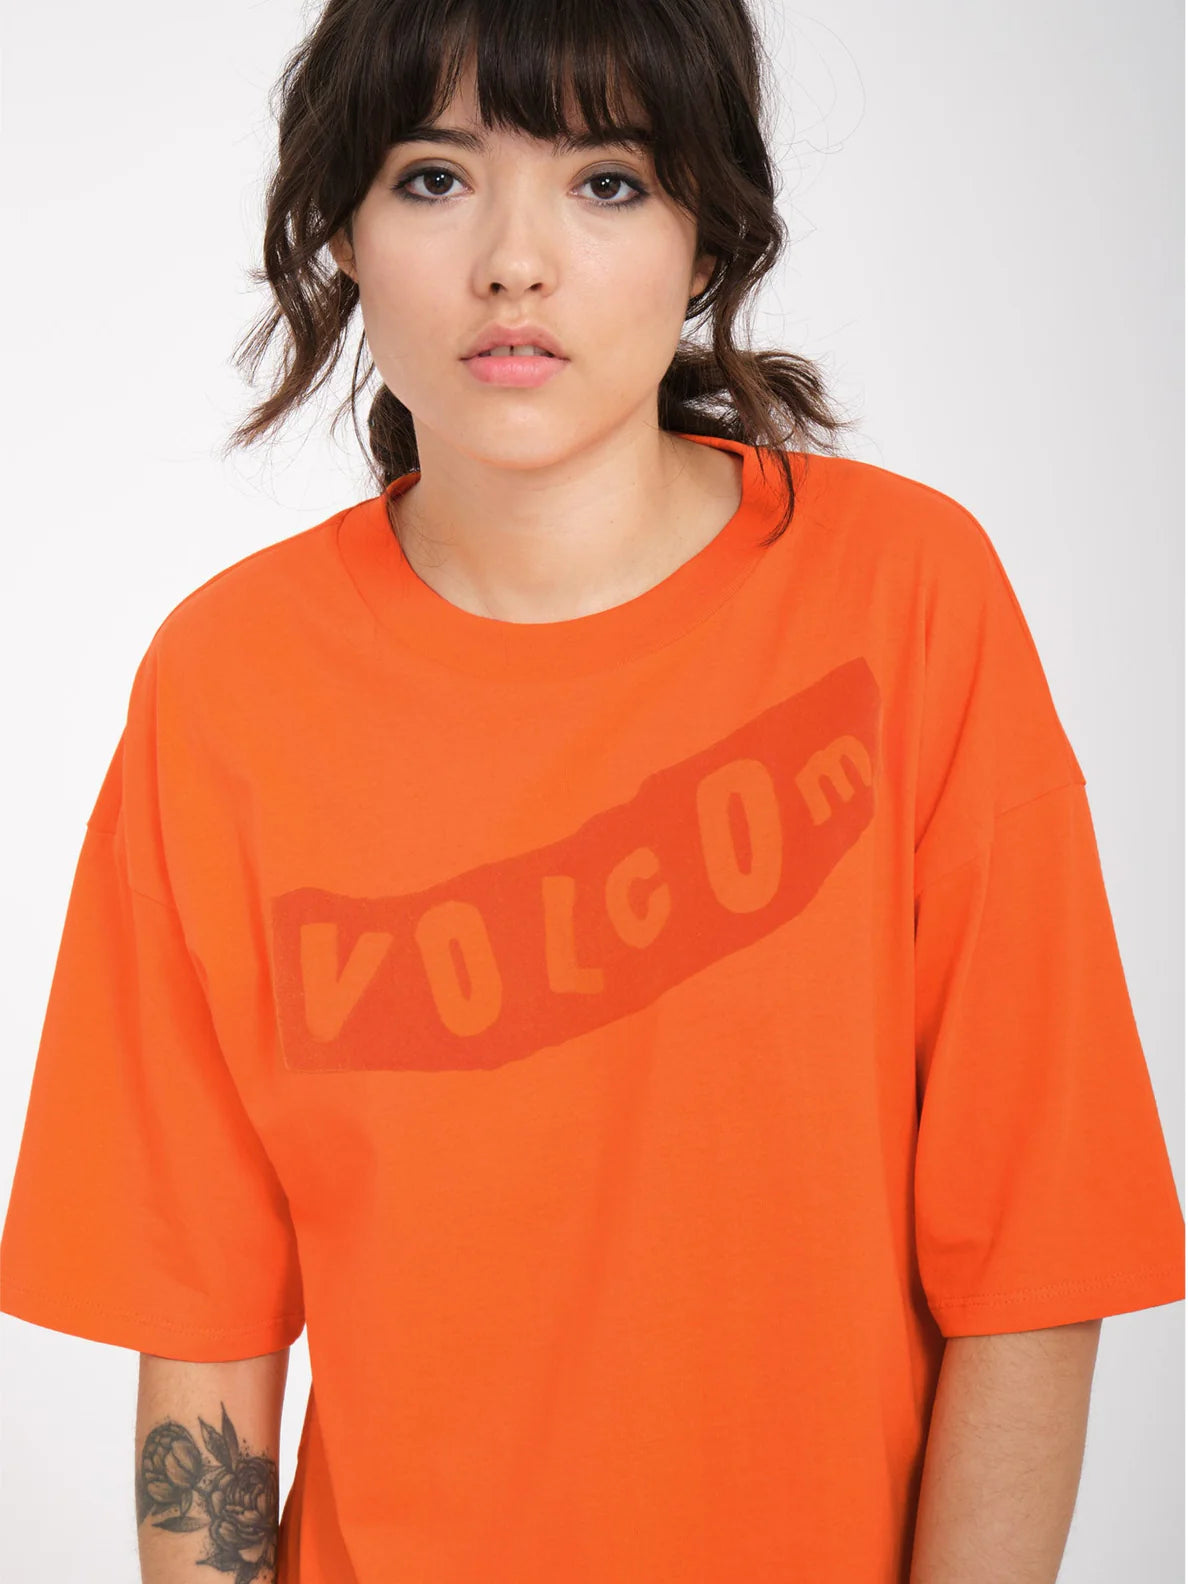 Camiseta Chica Volcom Pistol - Carrot | Camisetas manga corta de mujer | Volcom Shop | surfdevils.com